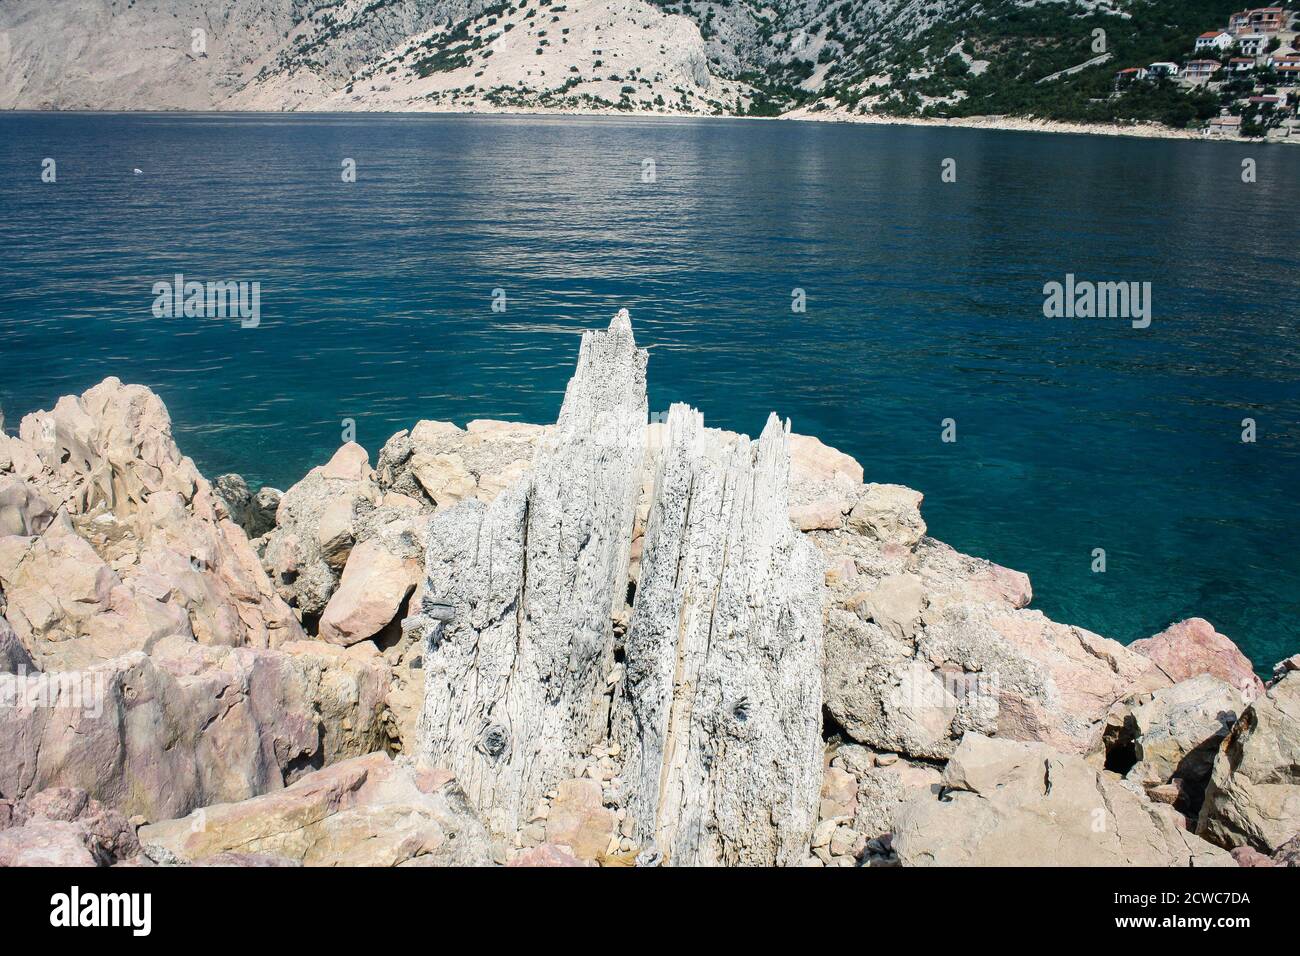 Das schöne Meer rockt das Adriatische Meer Stockfoto